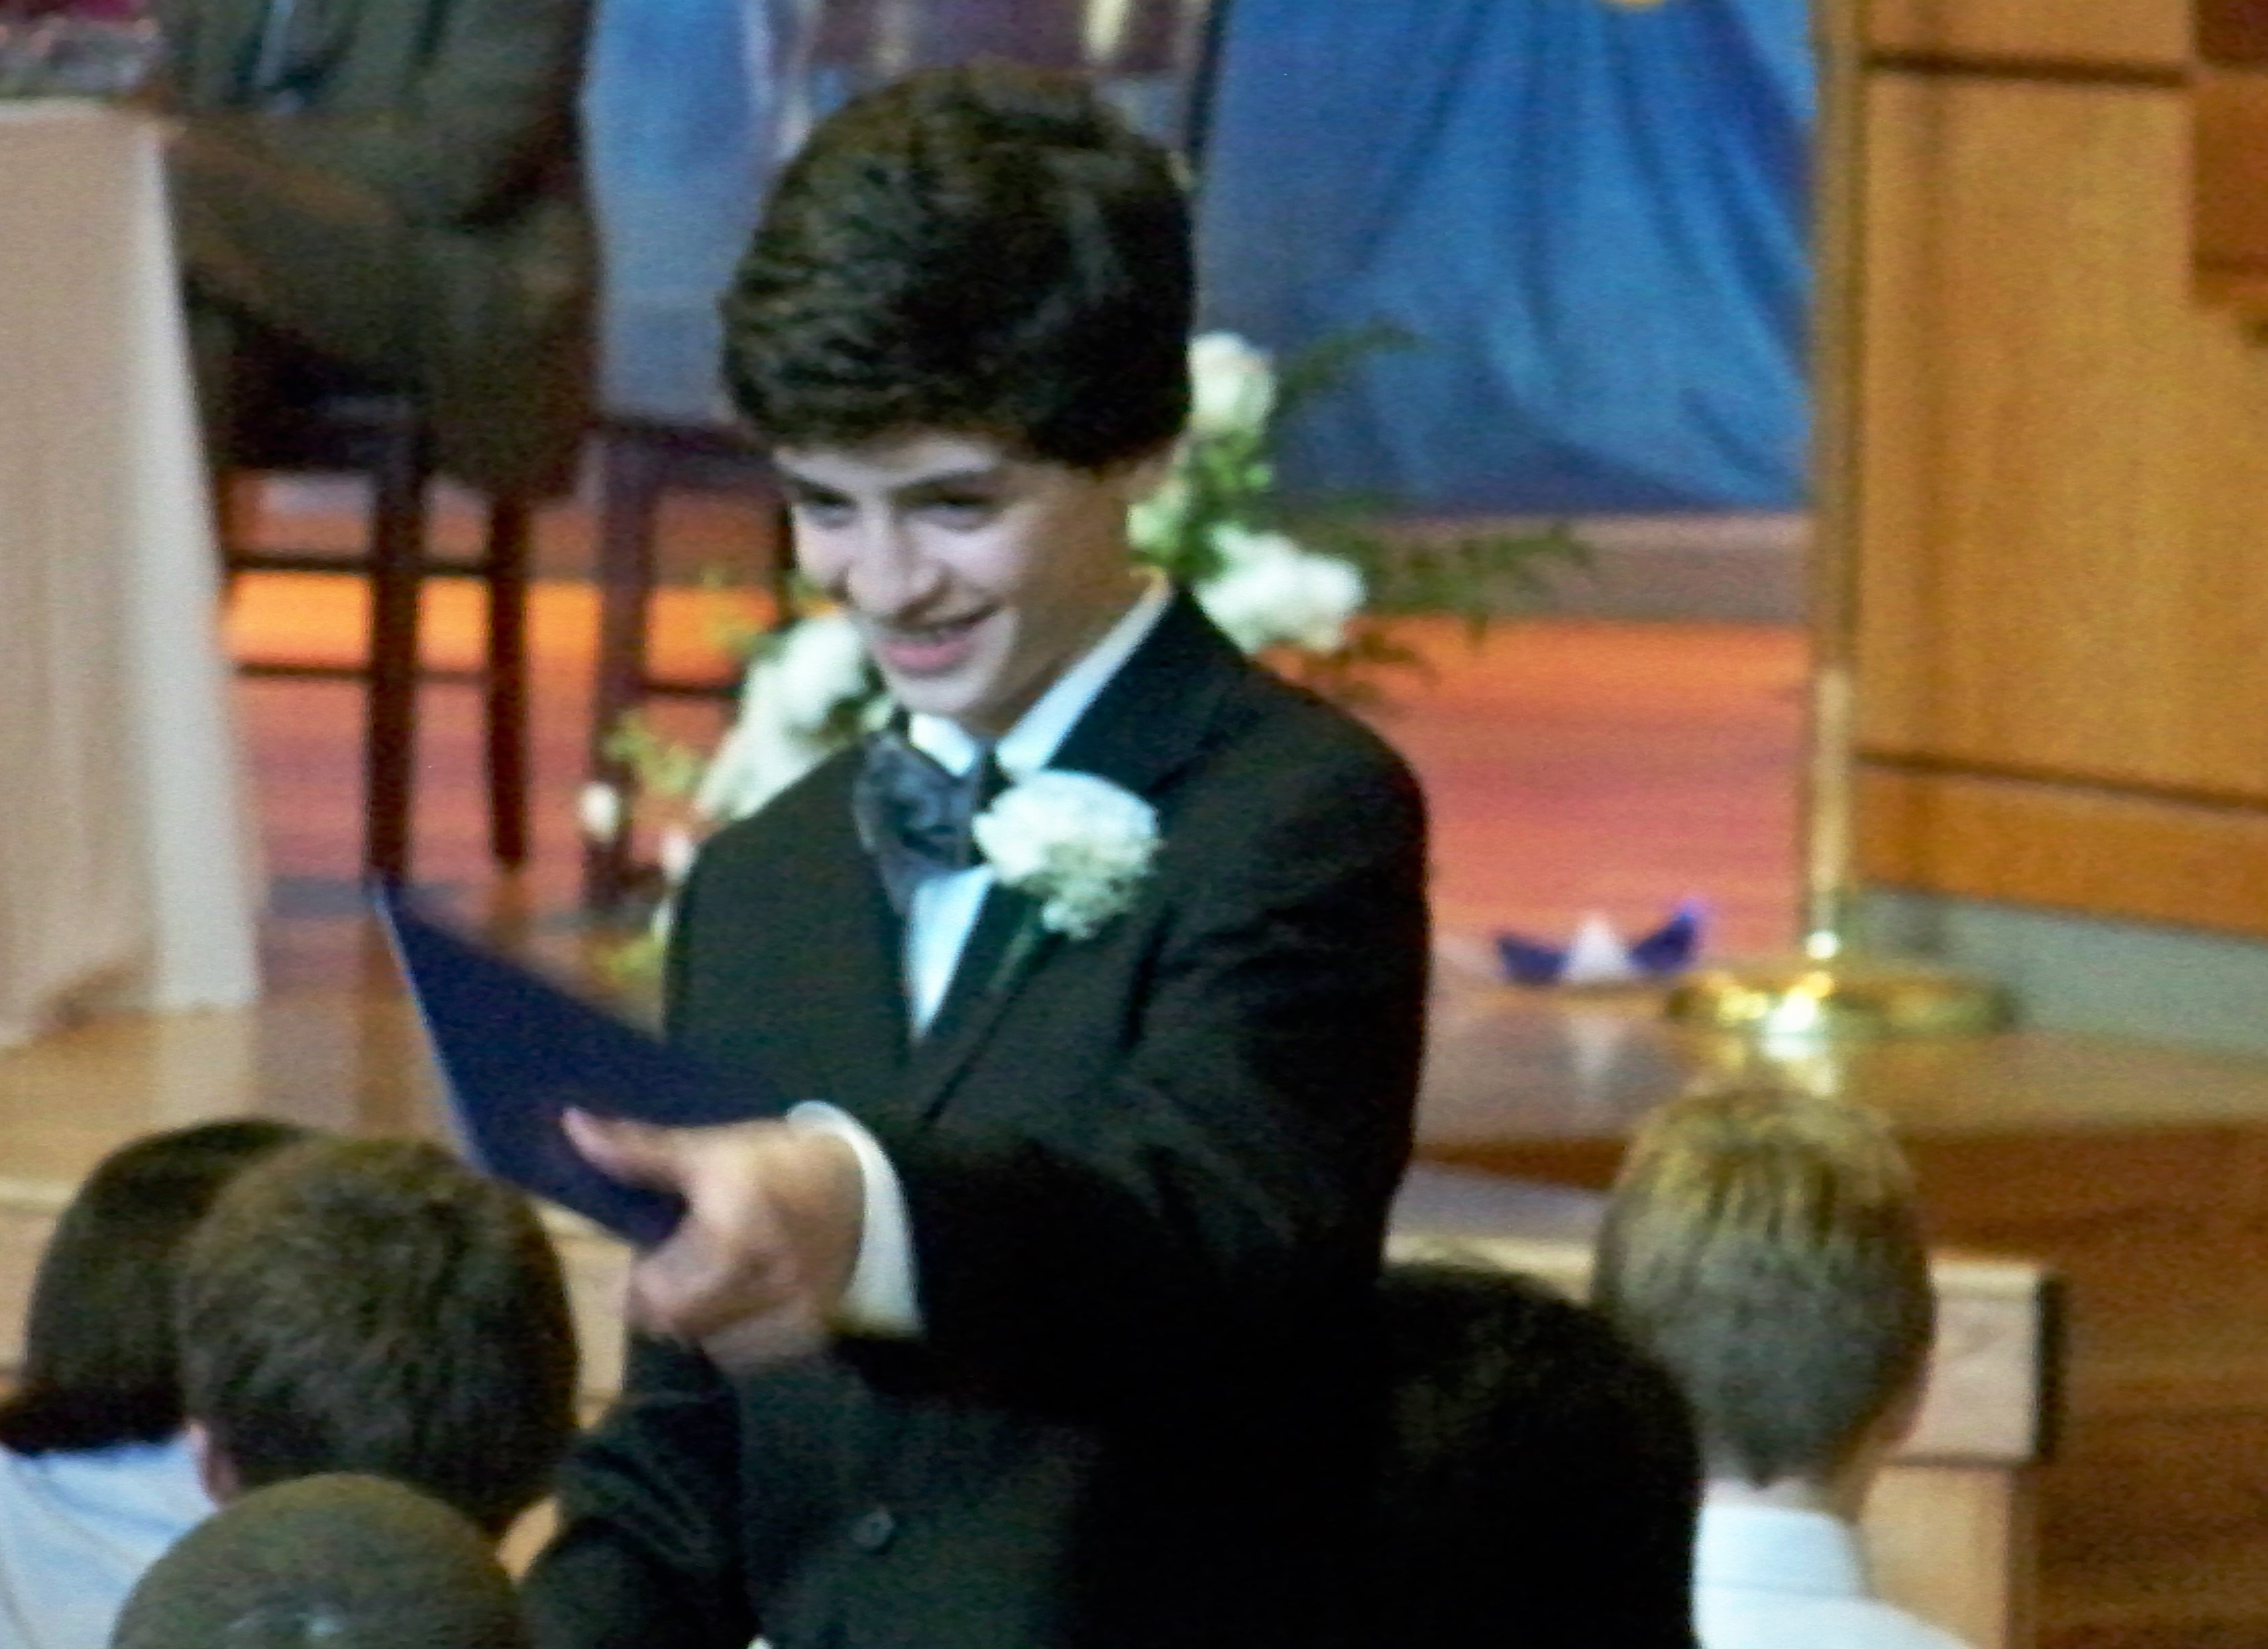 Received the Good Citizenship Award. John Rebello, 8th grade graduation, 2009